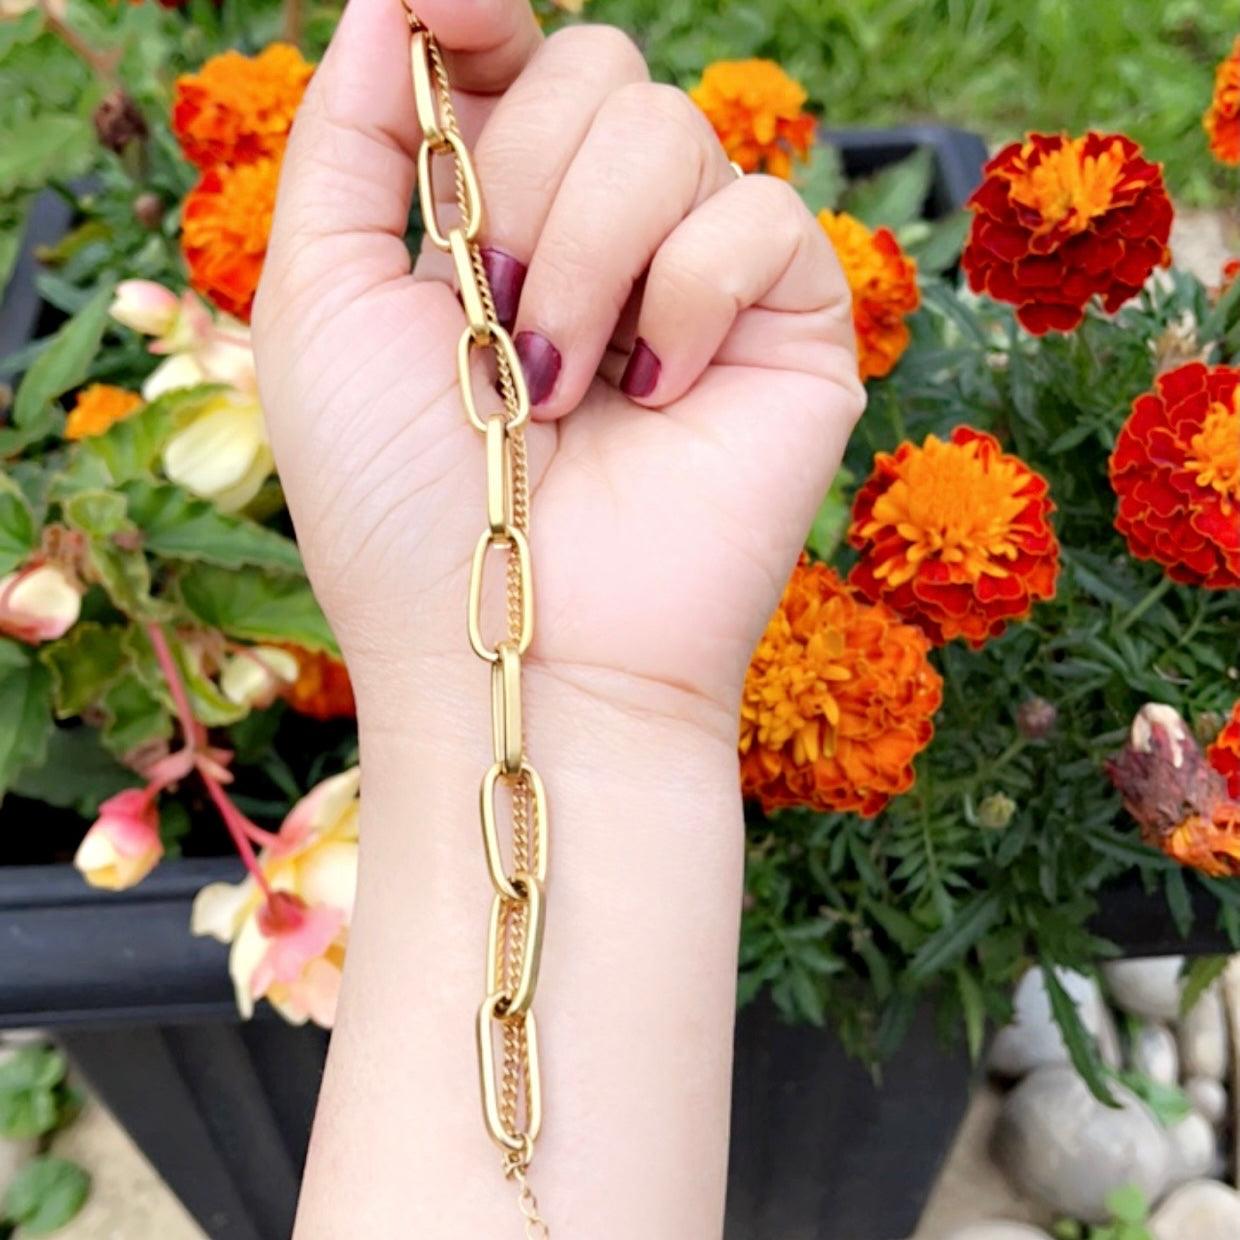 Golden Elegance Chain Bracelet - Whisperz